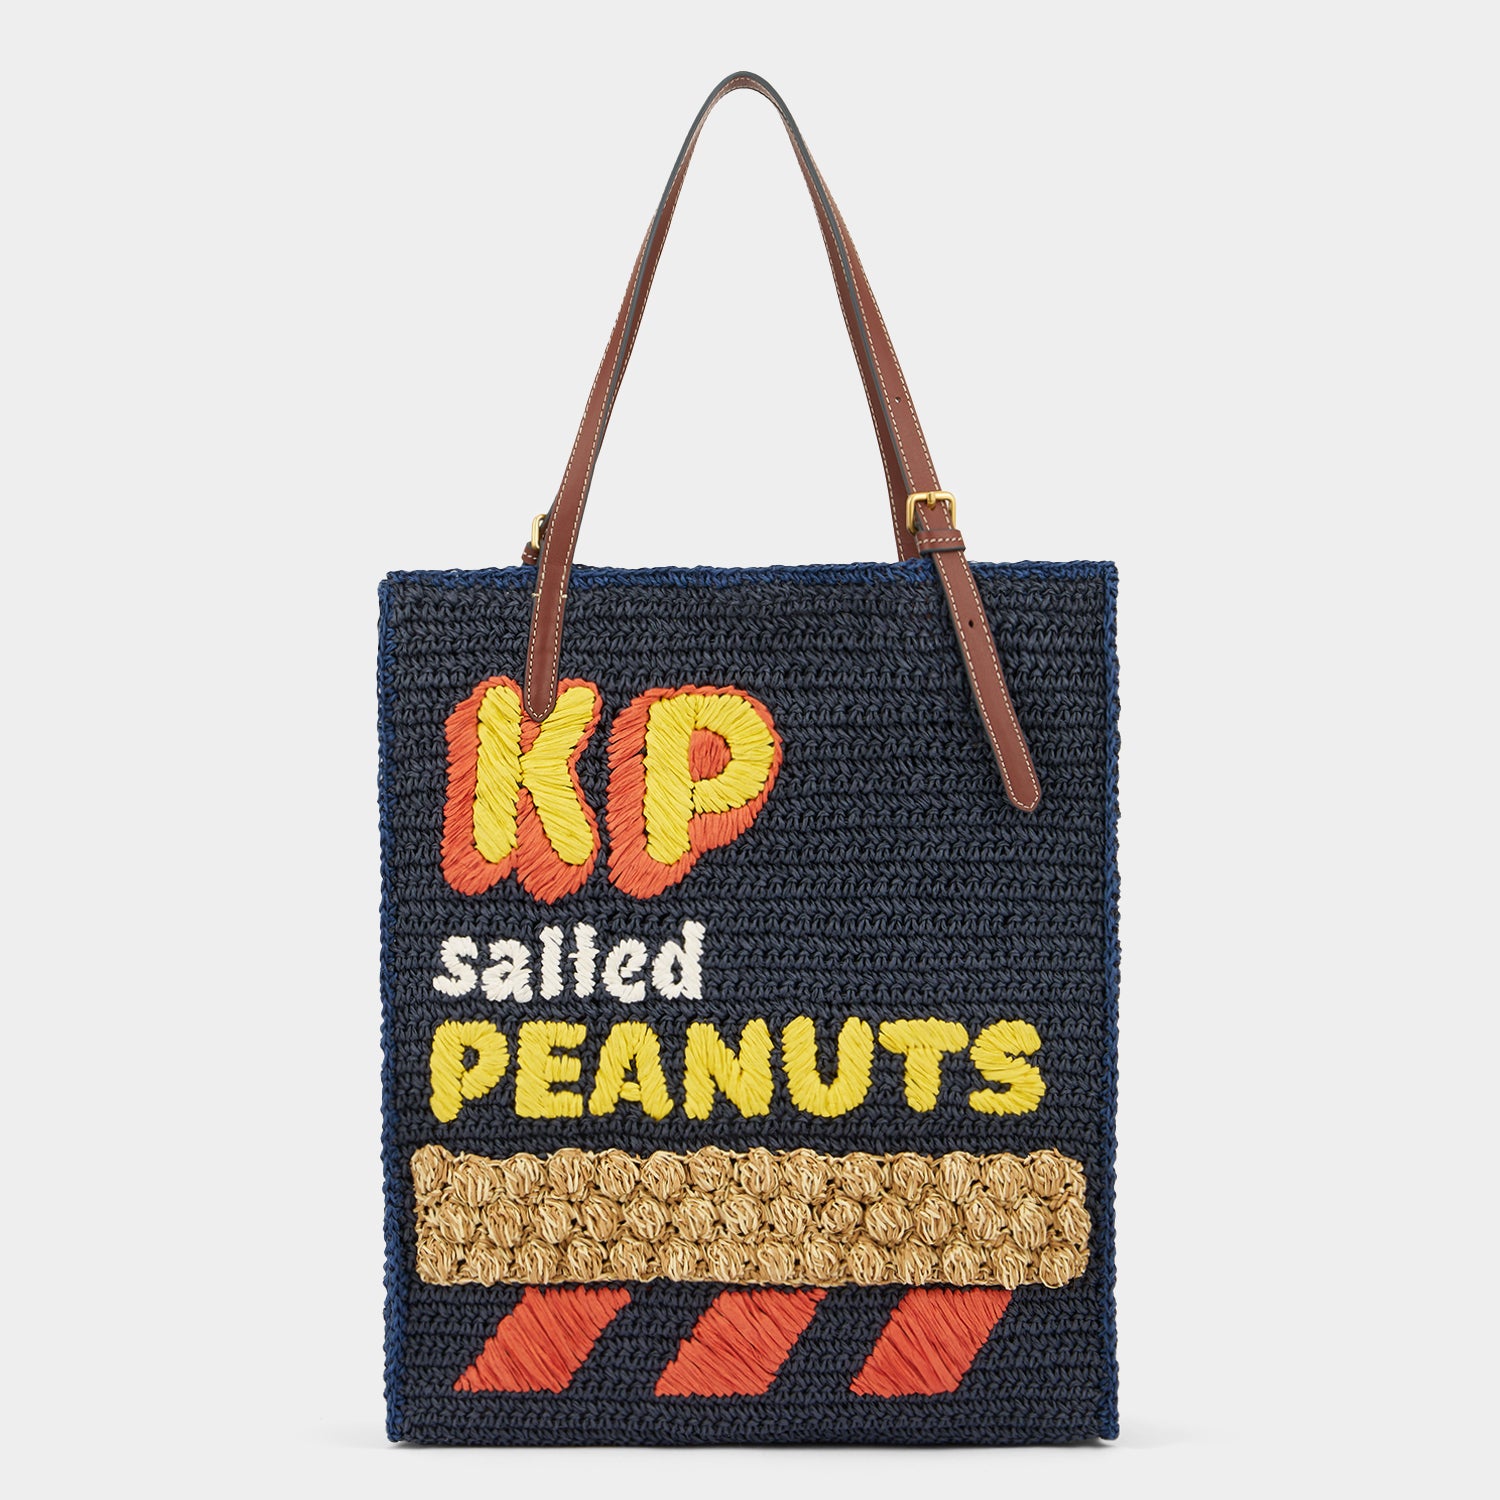 「KP Peanuts」 トート -

                  
                    Paper Raffia in Dark Petrol -
                  

                  Anya Hindmarch JP
